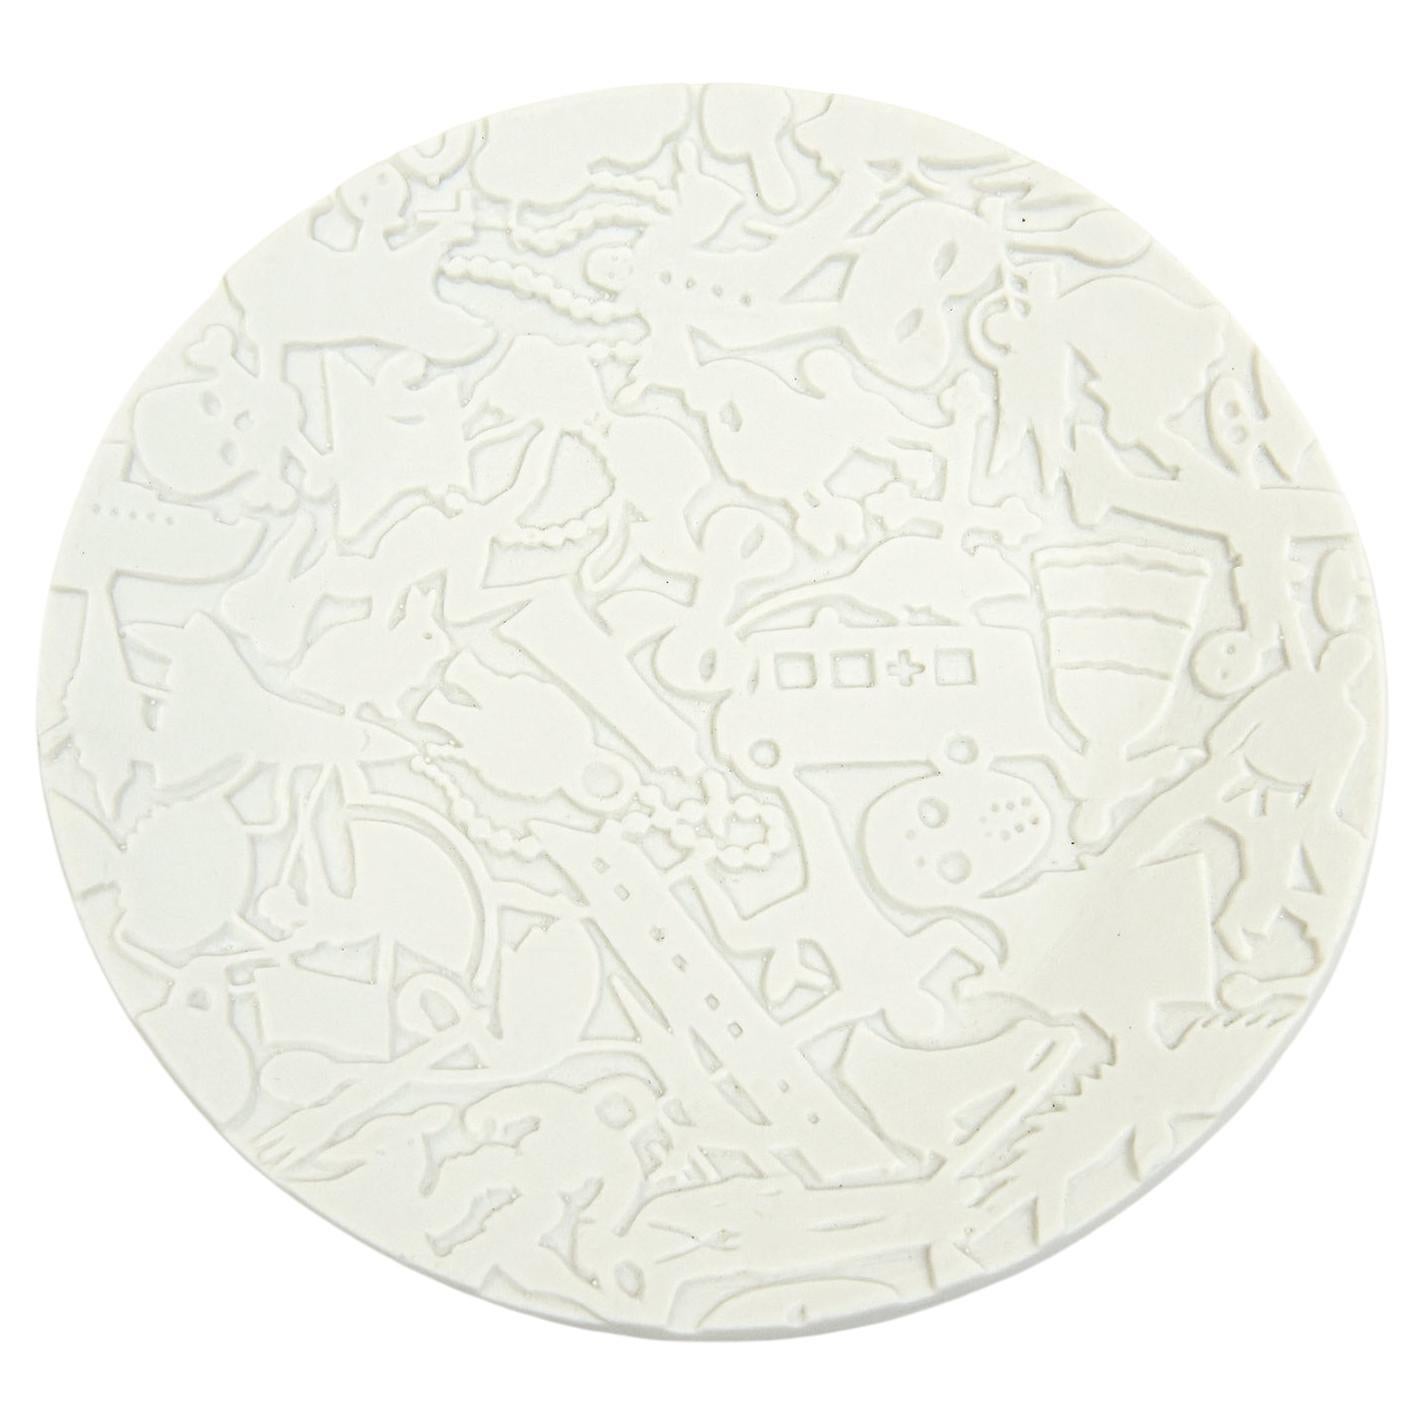 Studio Job for Makkum Pottery Textural Relief White Matt Porcelain Plate For Sale